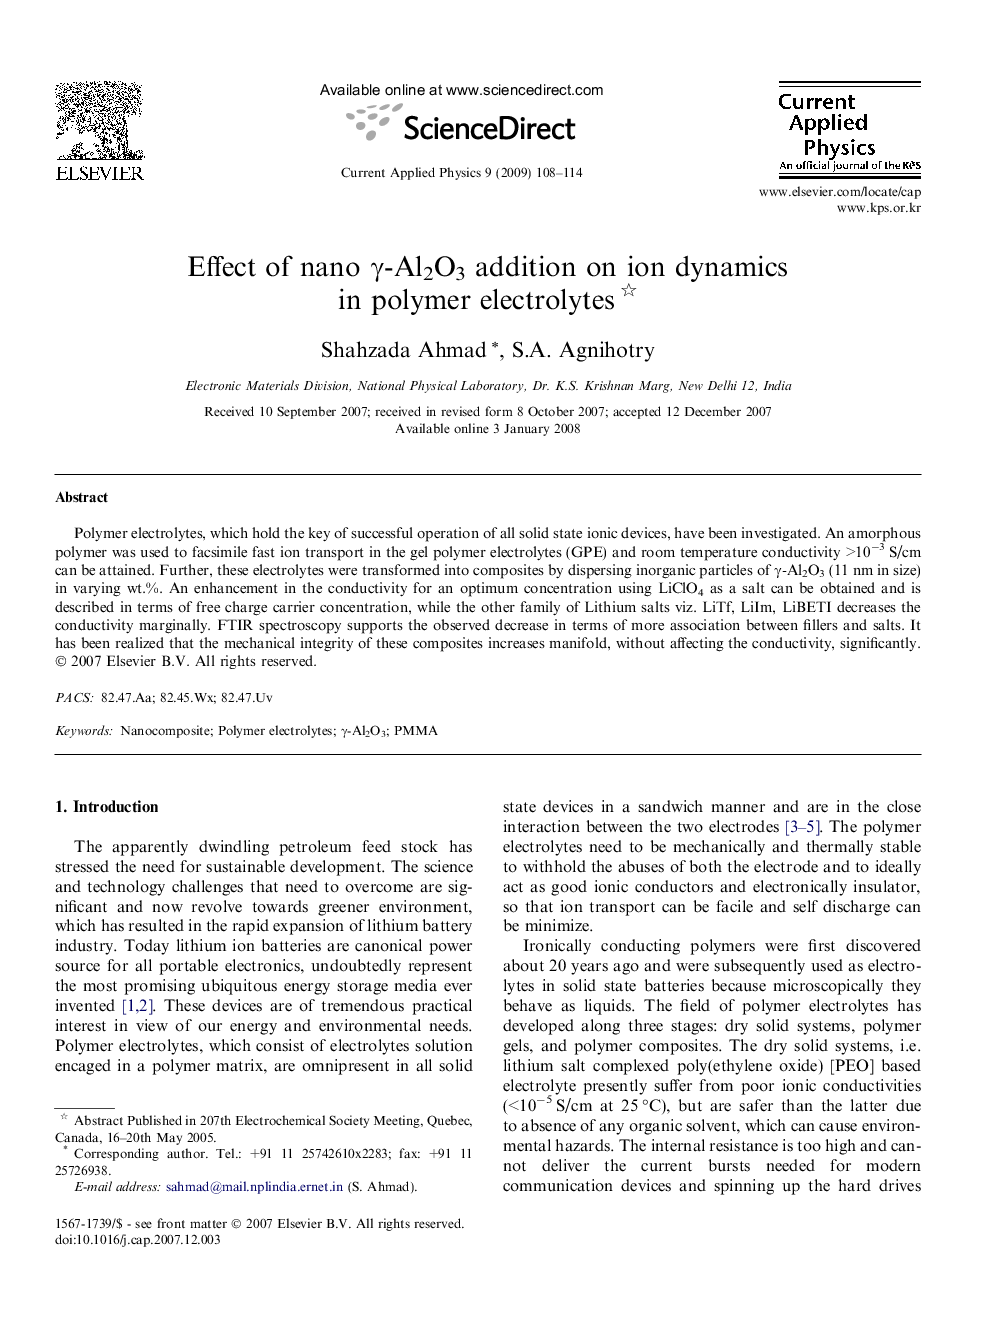 Effect of nano Î³-Al2O3 addition on ion dynamics in polymer electrolytes